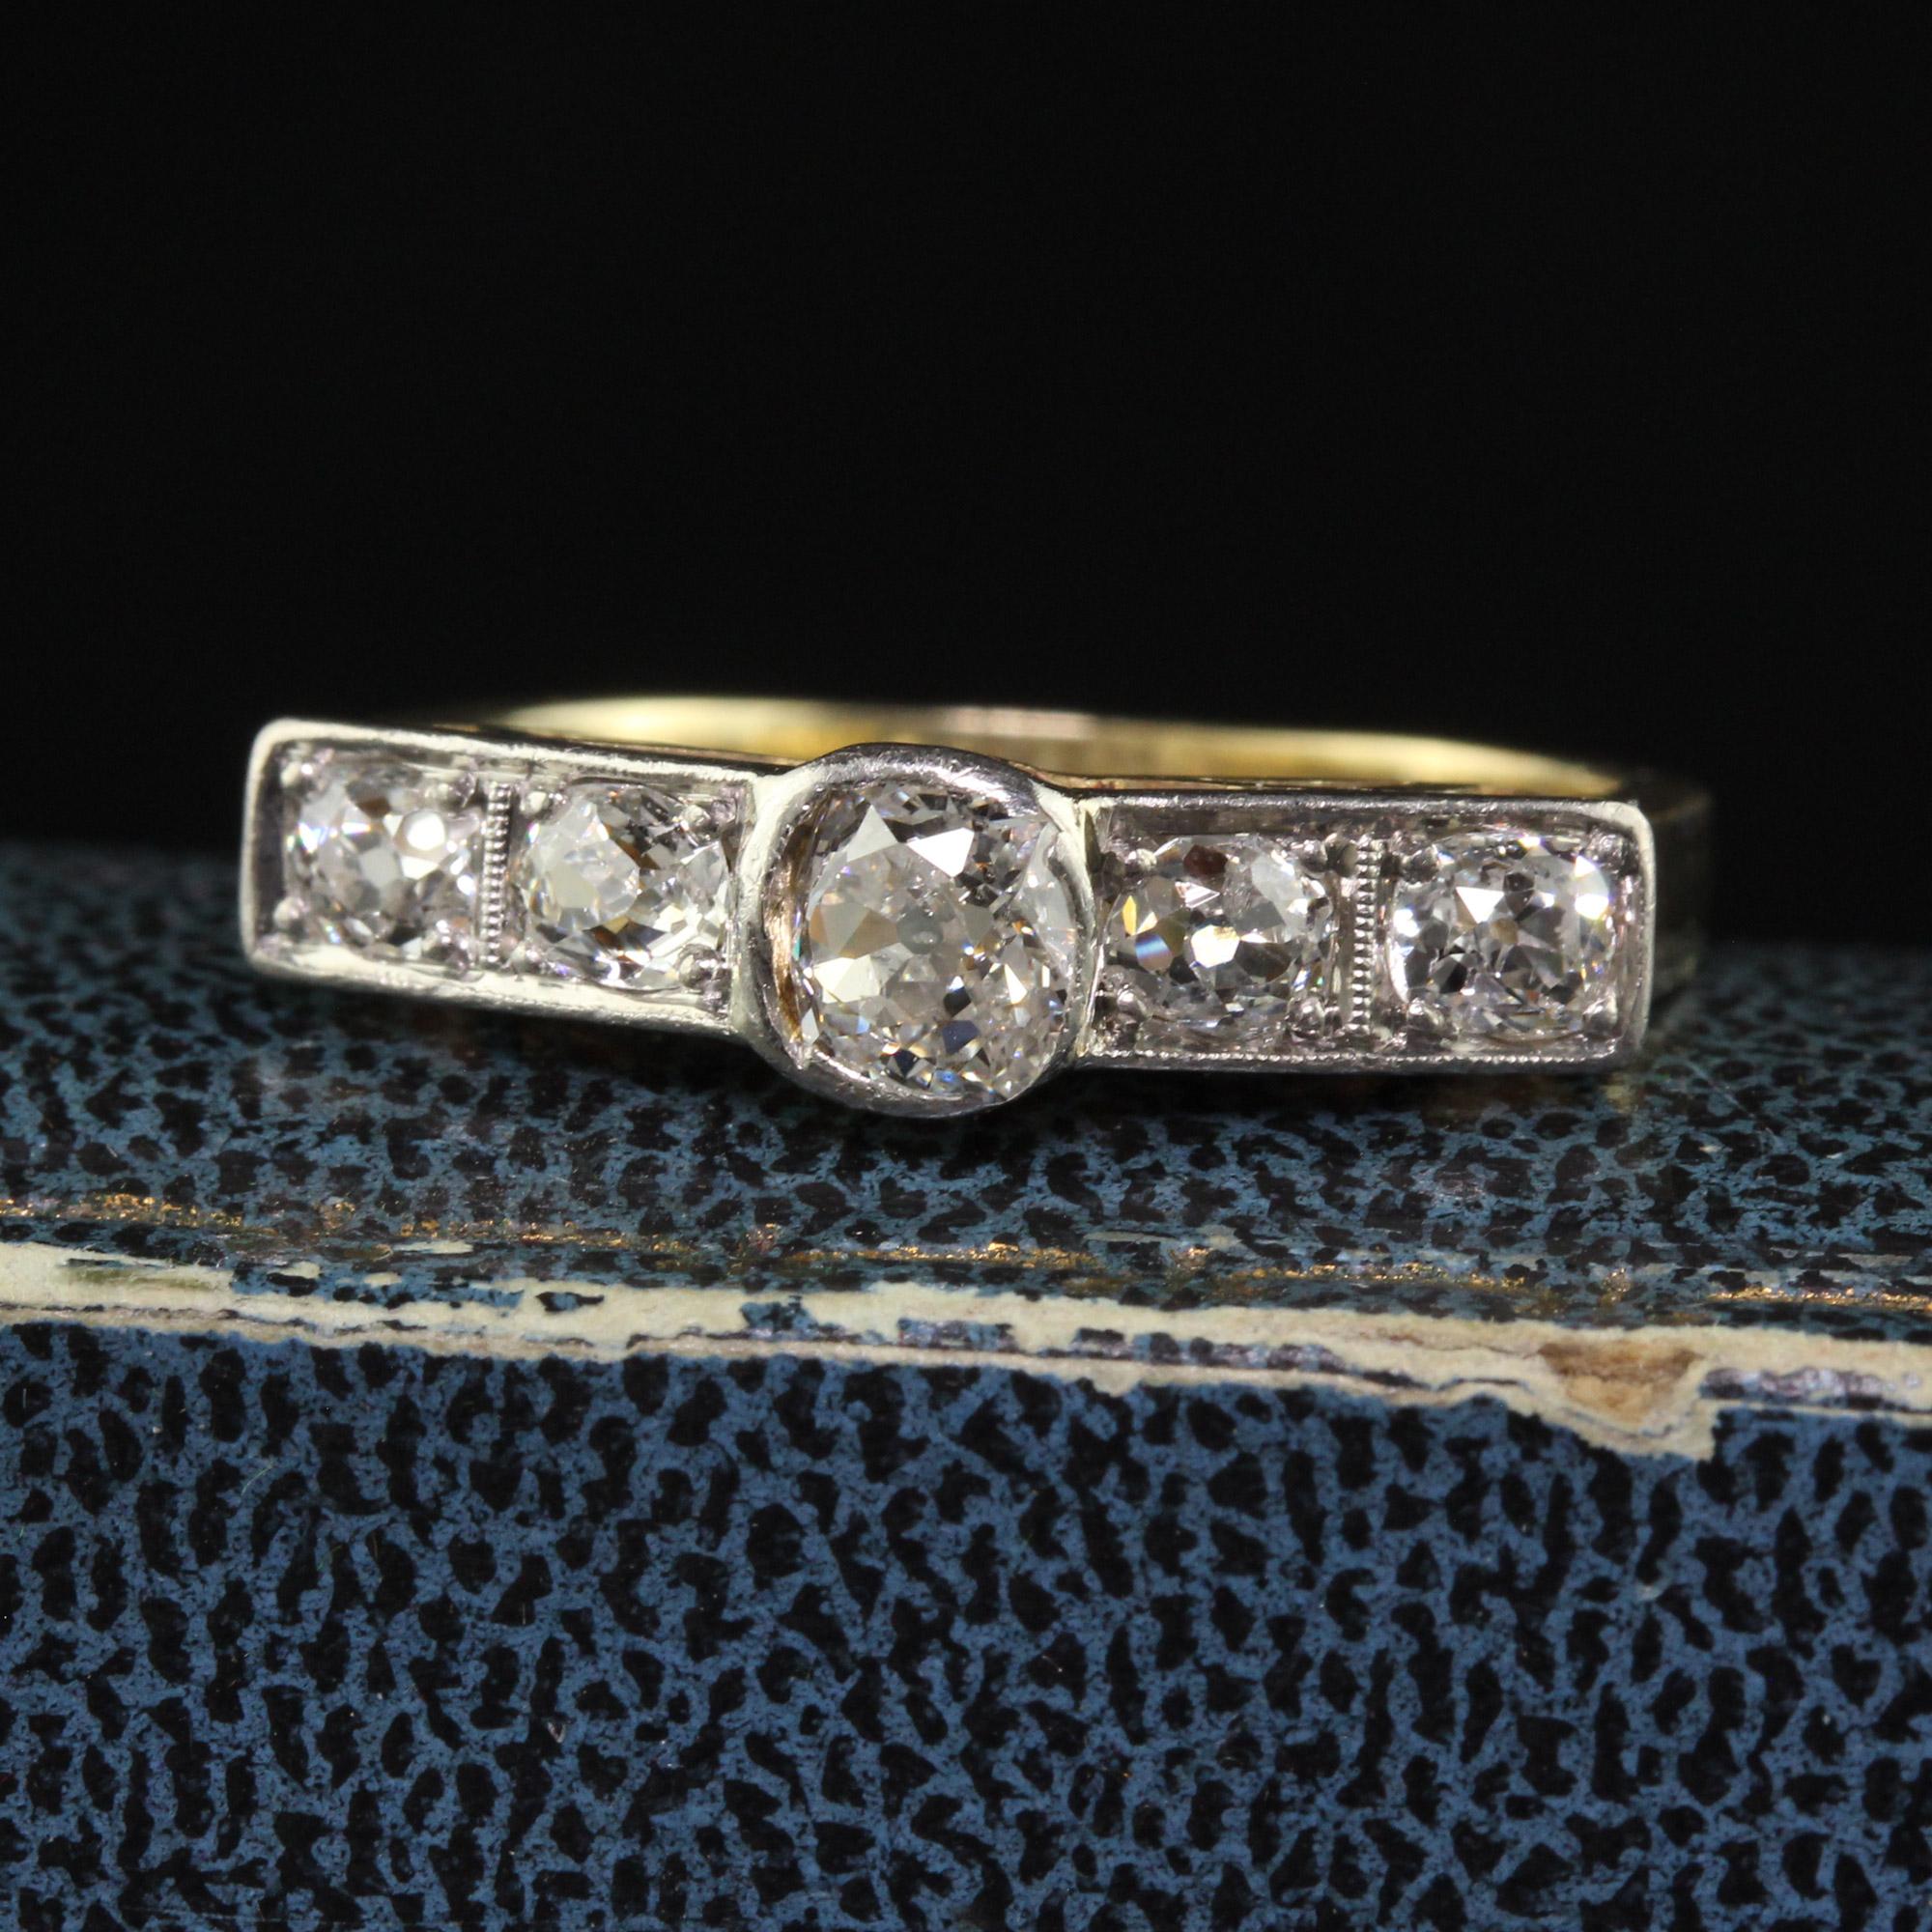 Schöne antike Art Deco 14K Gelbgold Old Mine Diamond Wedding Band Ring. Dieser schöne Ring ist aus 14k Gelbgold und Weißgold gefertigt. Es gibt alte Mine geschliffenen Diamanten auf der Oberseite des Rings gesetzt und ist in sehr gutem Zustand.